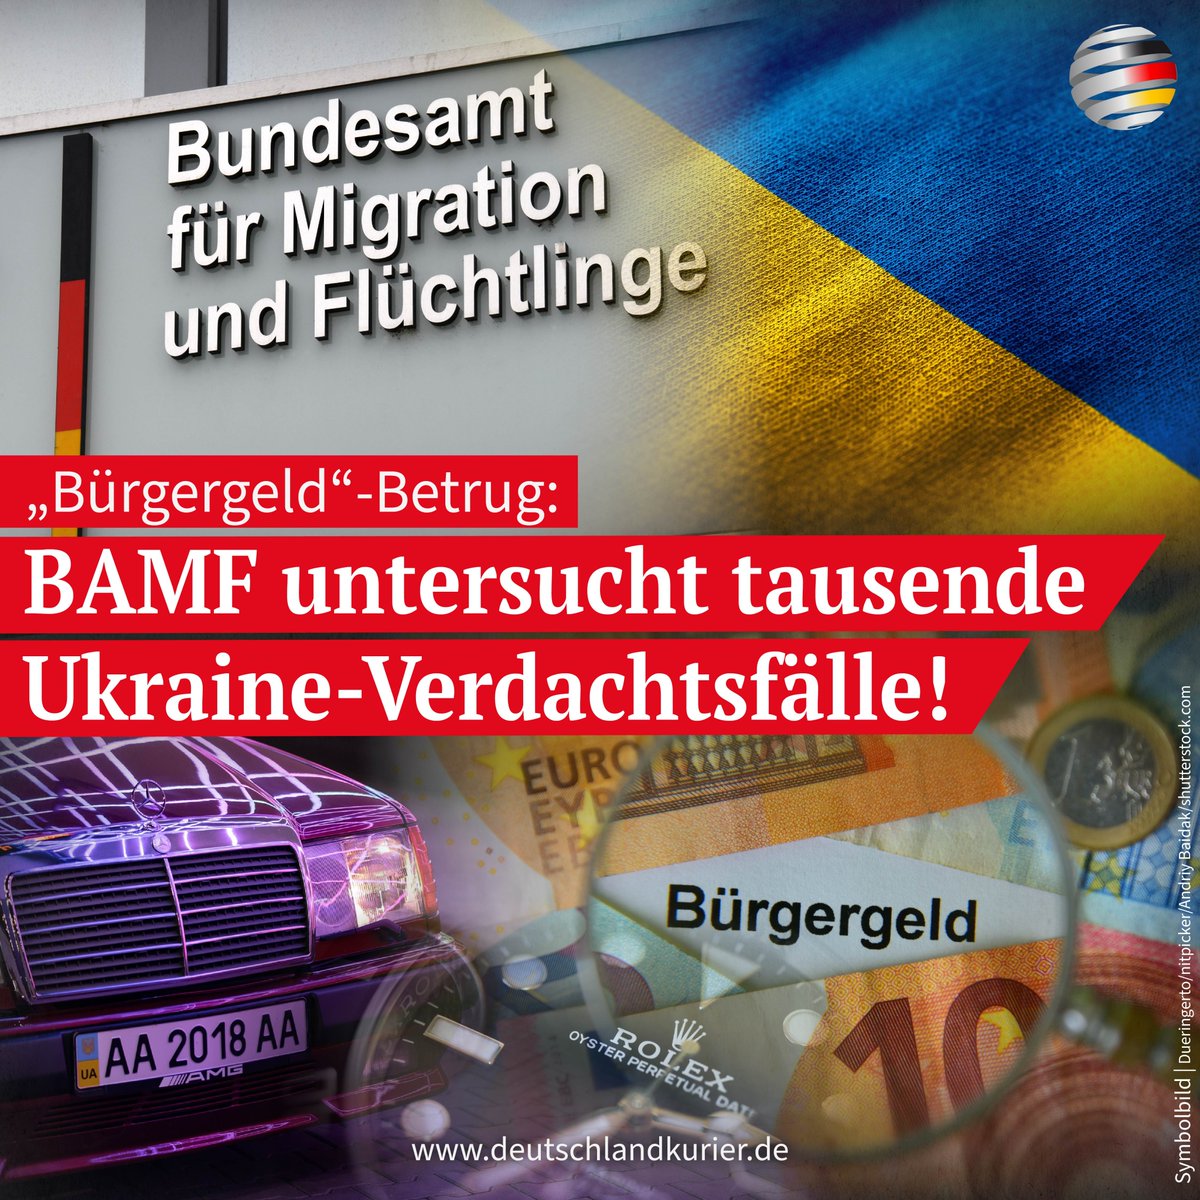 „Bürgergeld“-Betrug: BAMF untersucht tausende Ukraine-Verdachtsfälle! Das dem Bundesinnenministerium von Nancy Faeser (SPD) unterstehende Bundesamt für Migration und Flüchtlinge (BAMF) prüft derzeit tausende Verdachtsfälle auf Betrug beim sogenannten „Bürgergeld“ durch